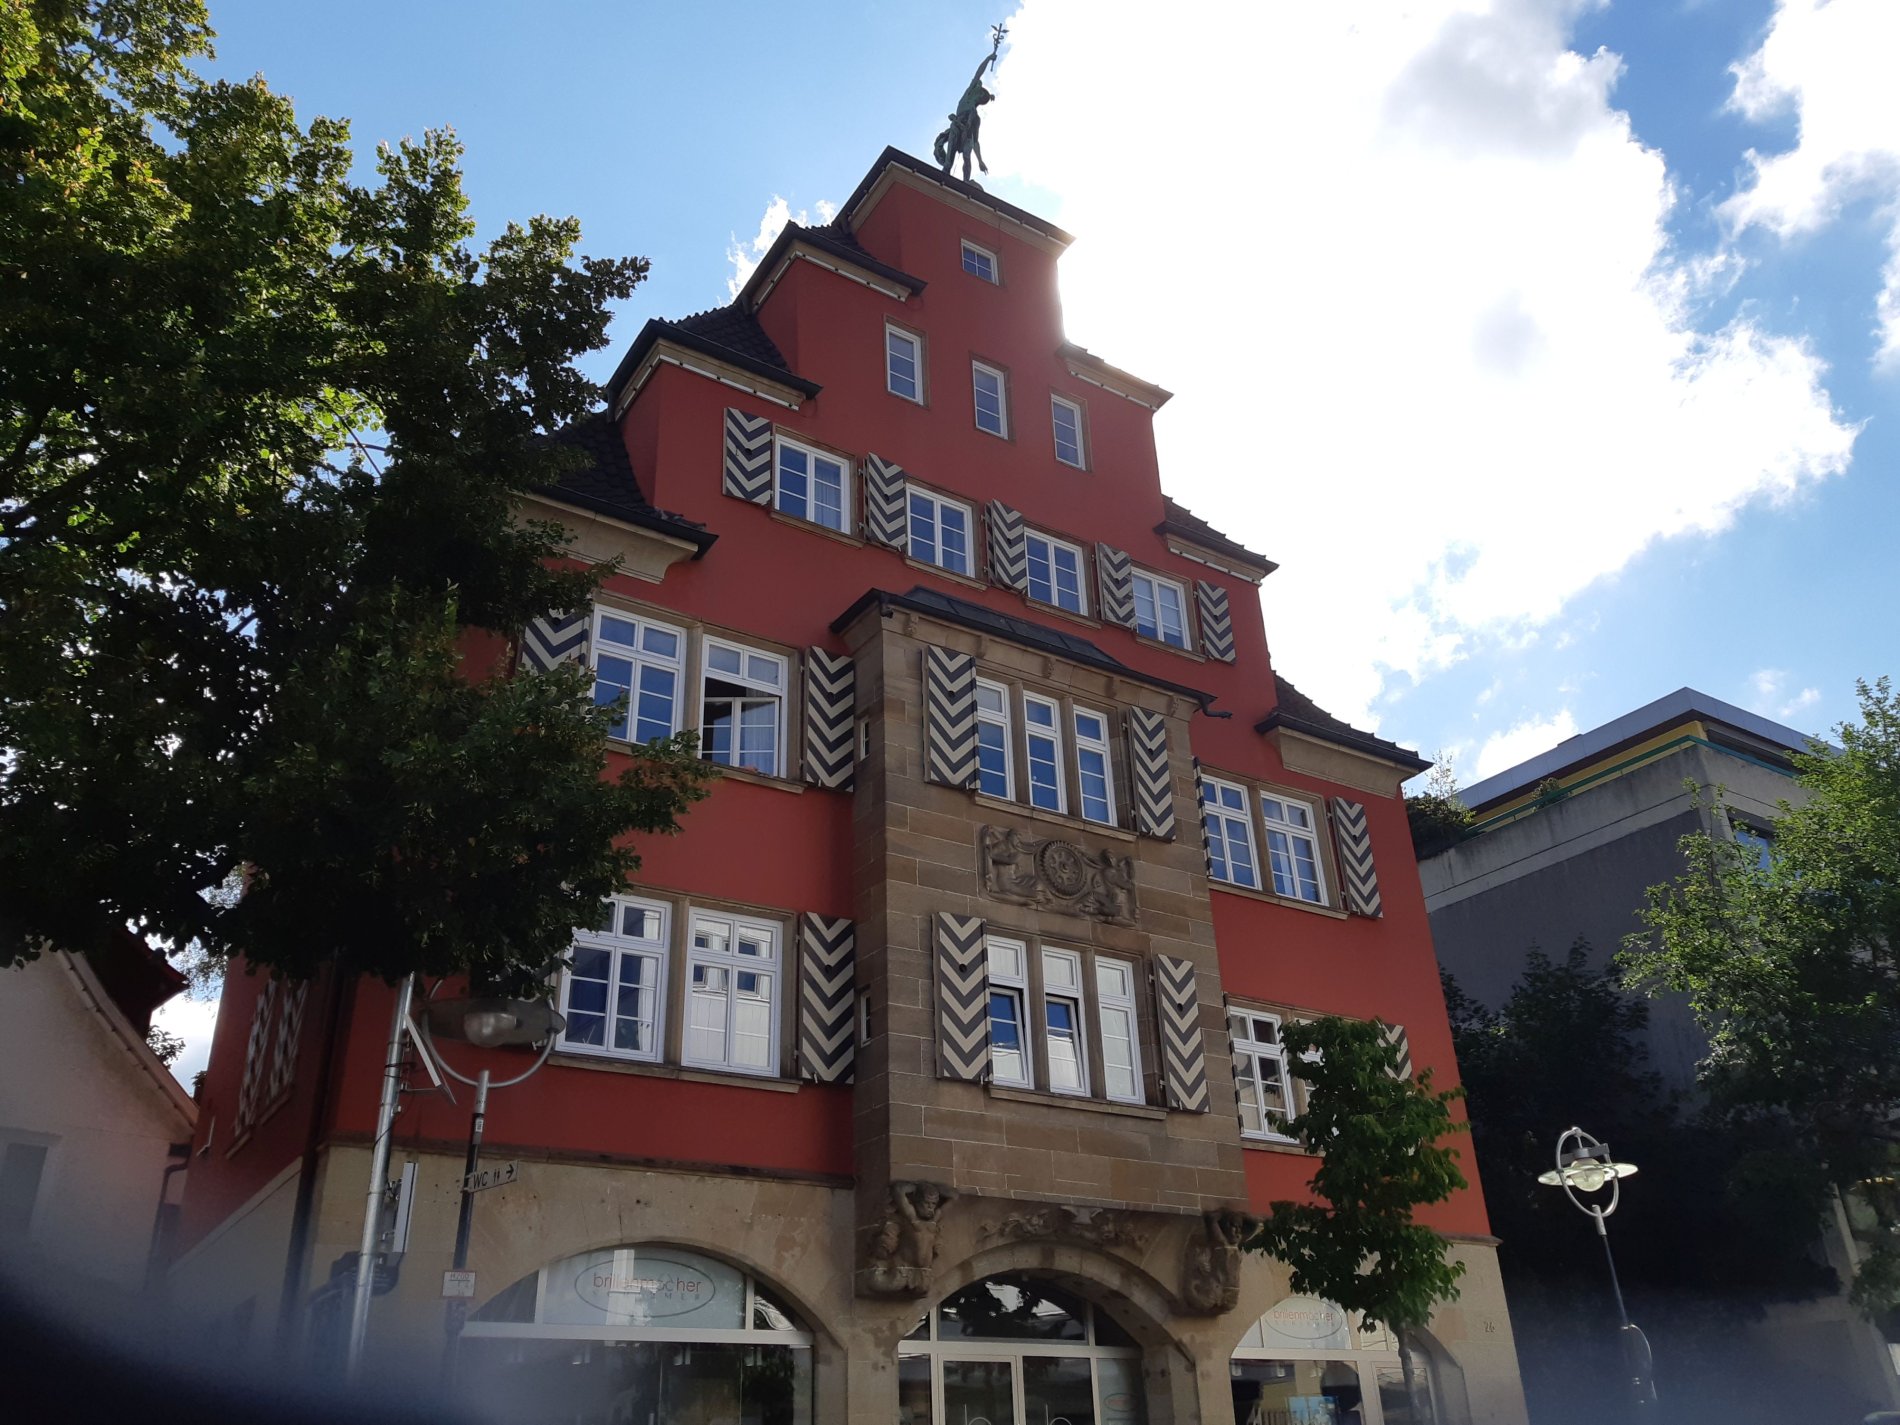 Haus der Merkur in Albstadt-Ebingen